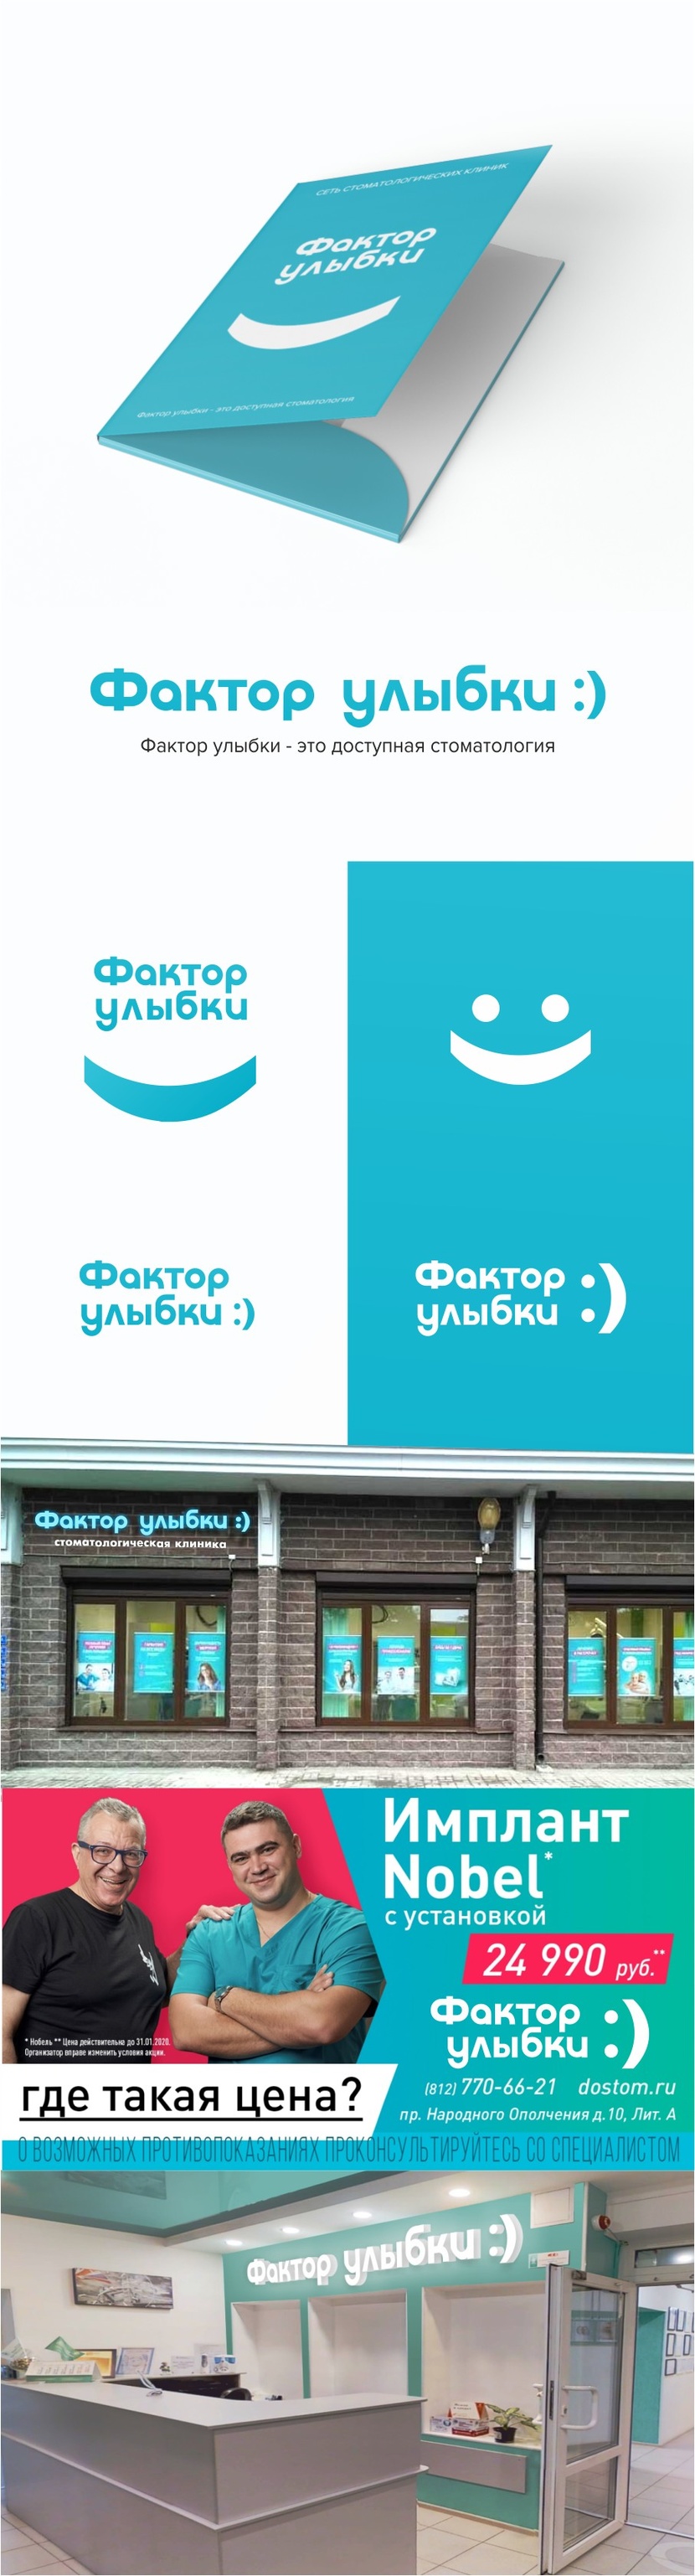 Разработка логотипа и фирменного стиля для существующей сети стоматологических клиник  -  автор Белозеров Павел